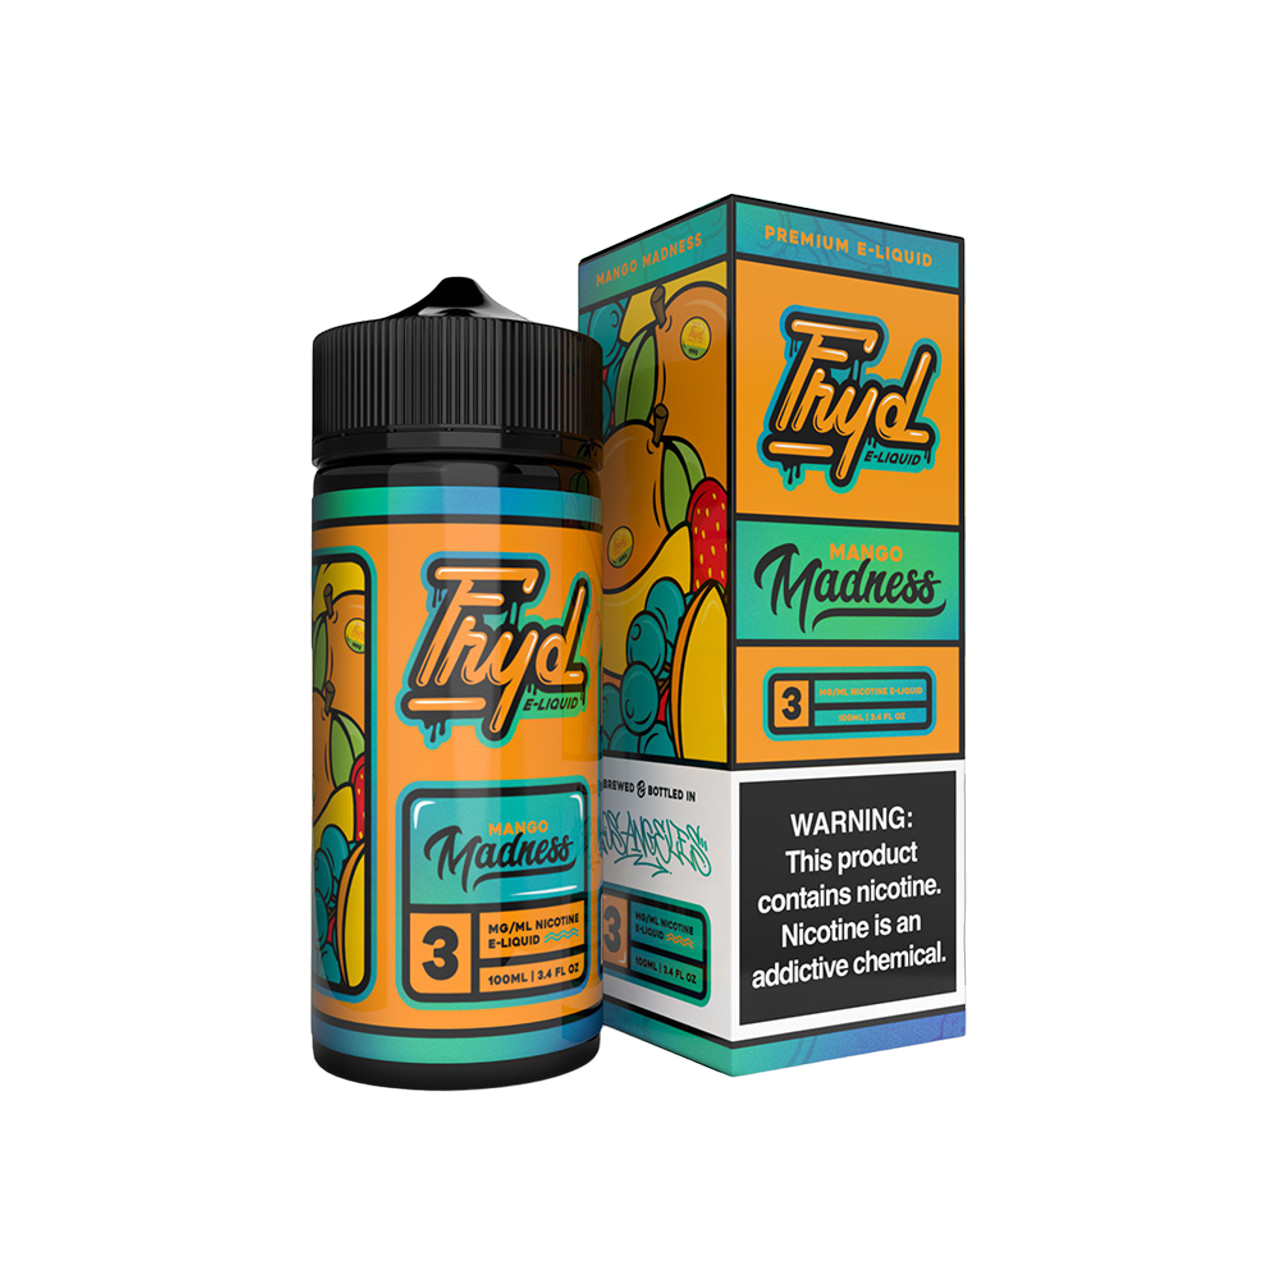 Fryd Nicotine Premium E-Liquid 100ML Mango Madness